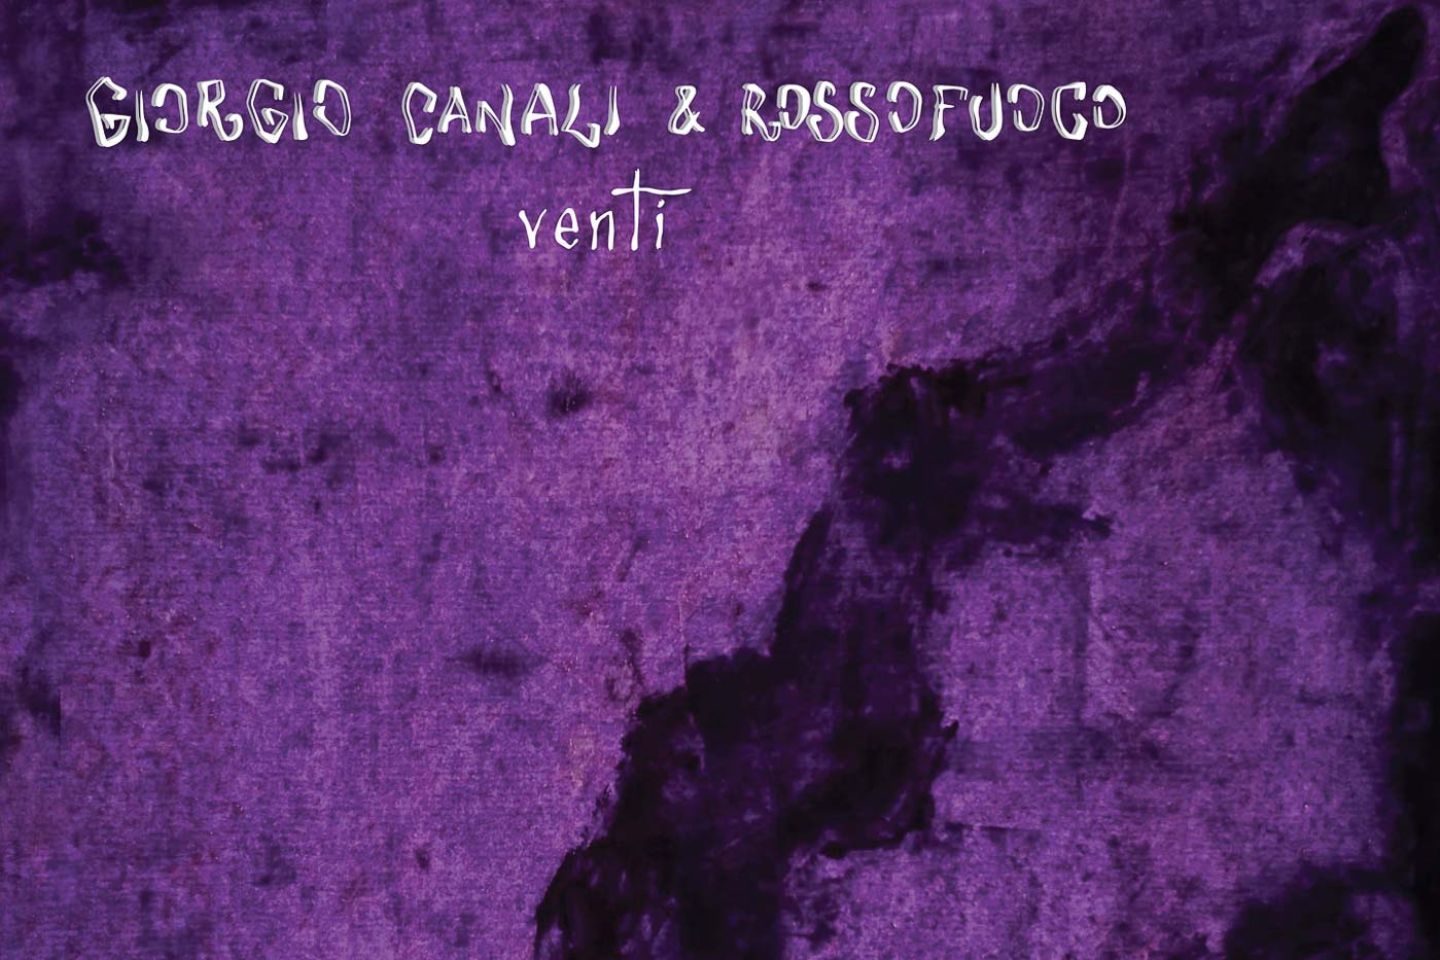 Giorgio Canali & Rossofuoco “Venti” (La Tempesta Dischi, 2020)